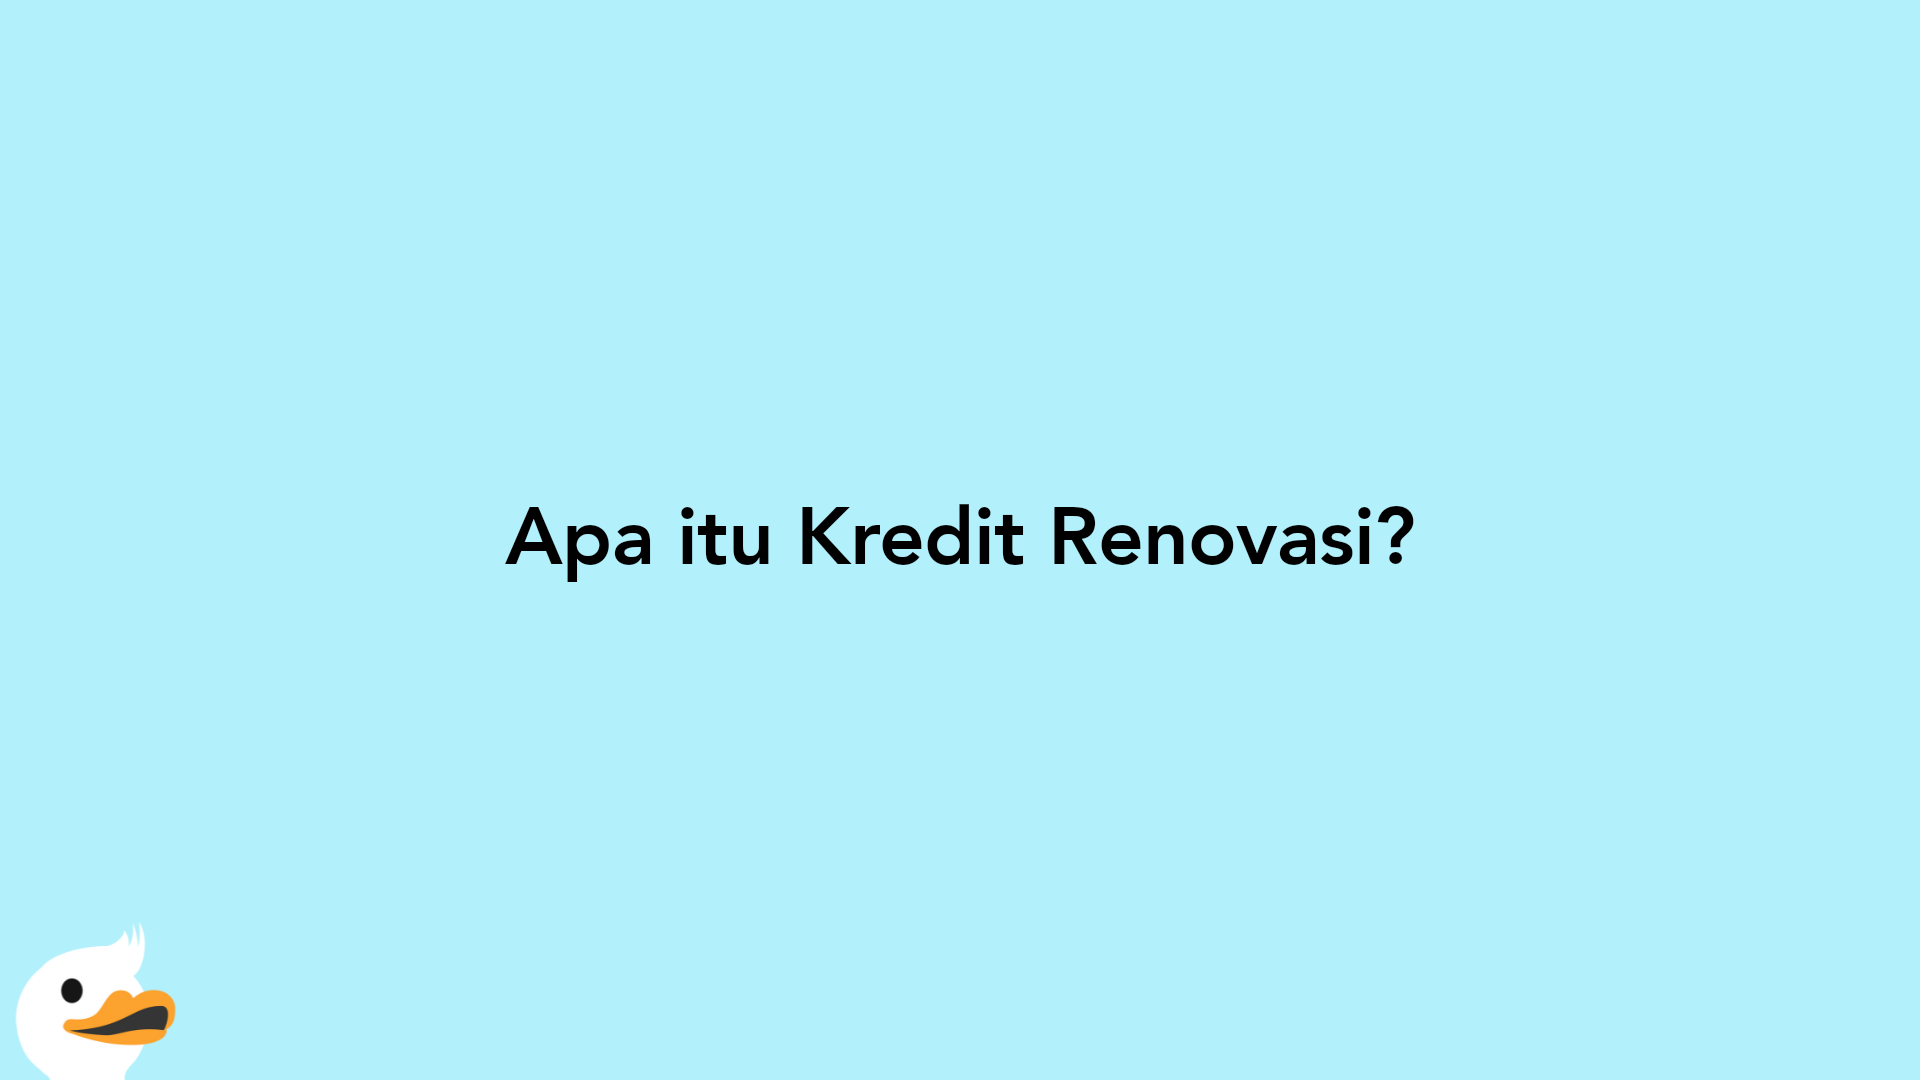 Apa itu Kredit Renovasi?